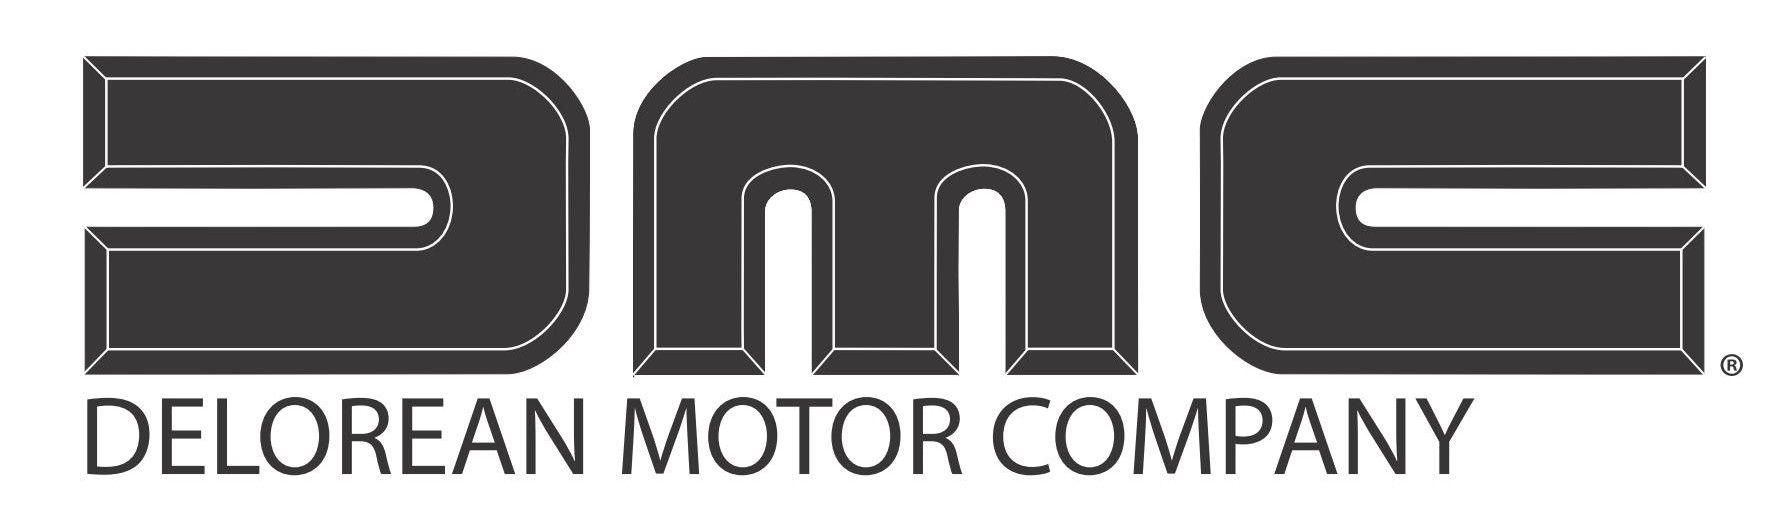 DeLorean Logo - DeLorean Motor Company Logo Free Vector Download